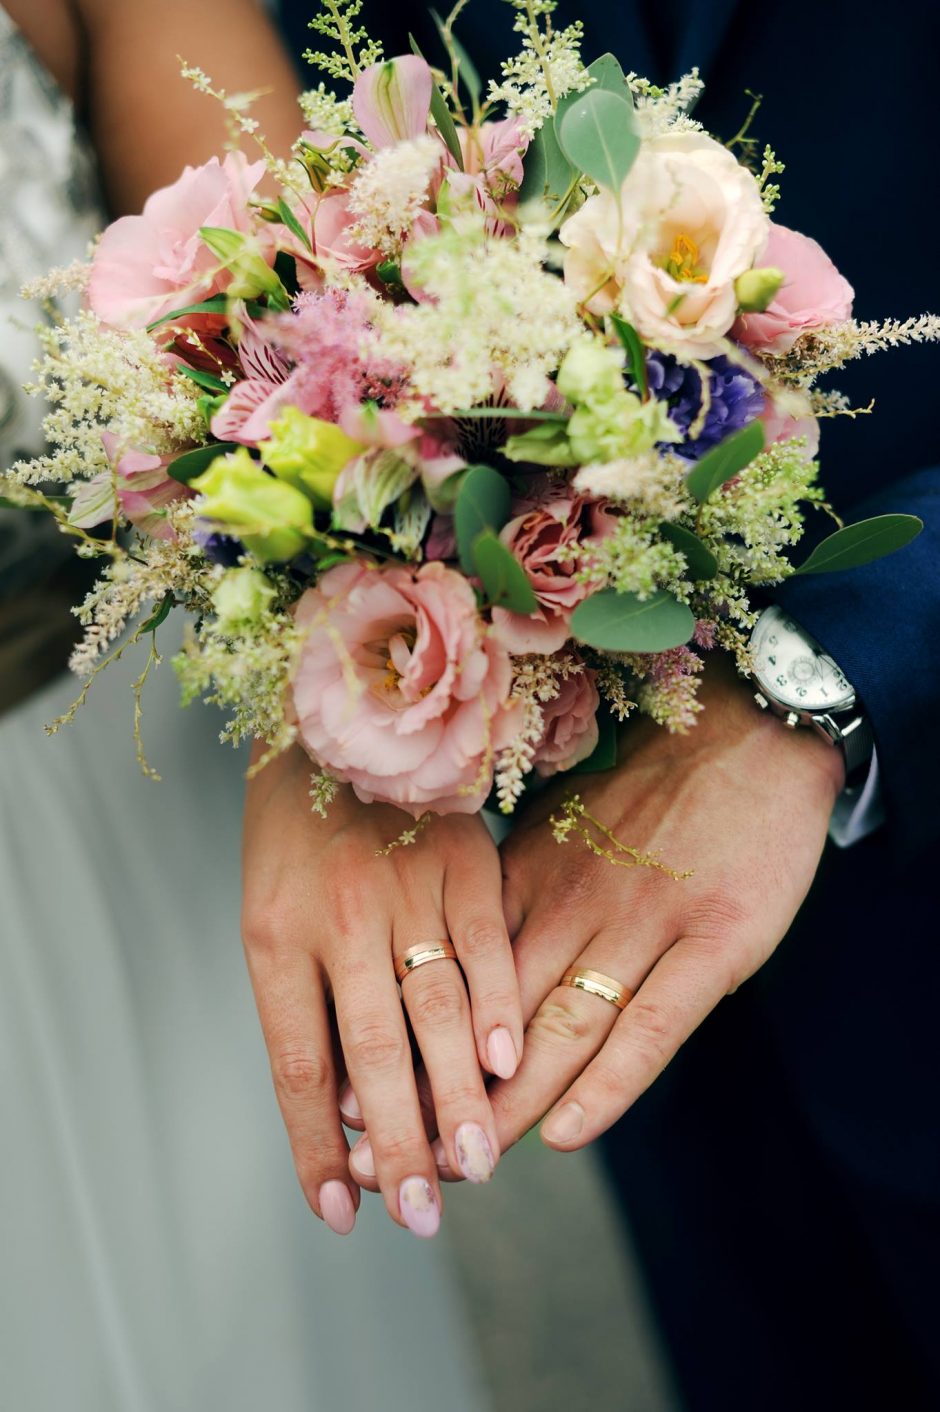 Vestuviniai žiedai: klasikiniai, dekoruoti briliantais ar individualaus dizaino?